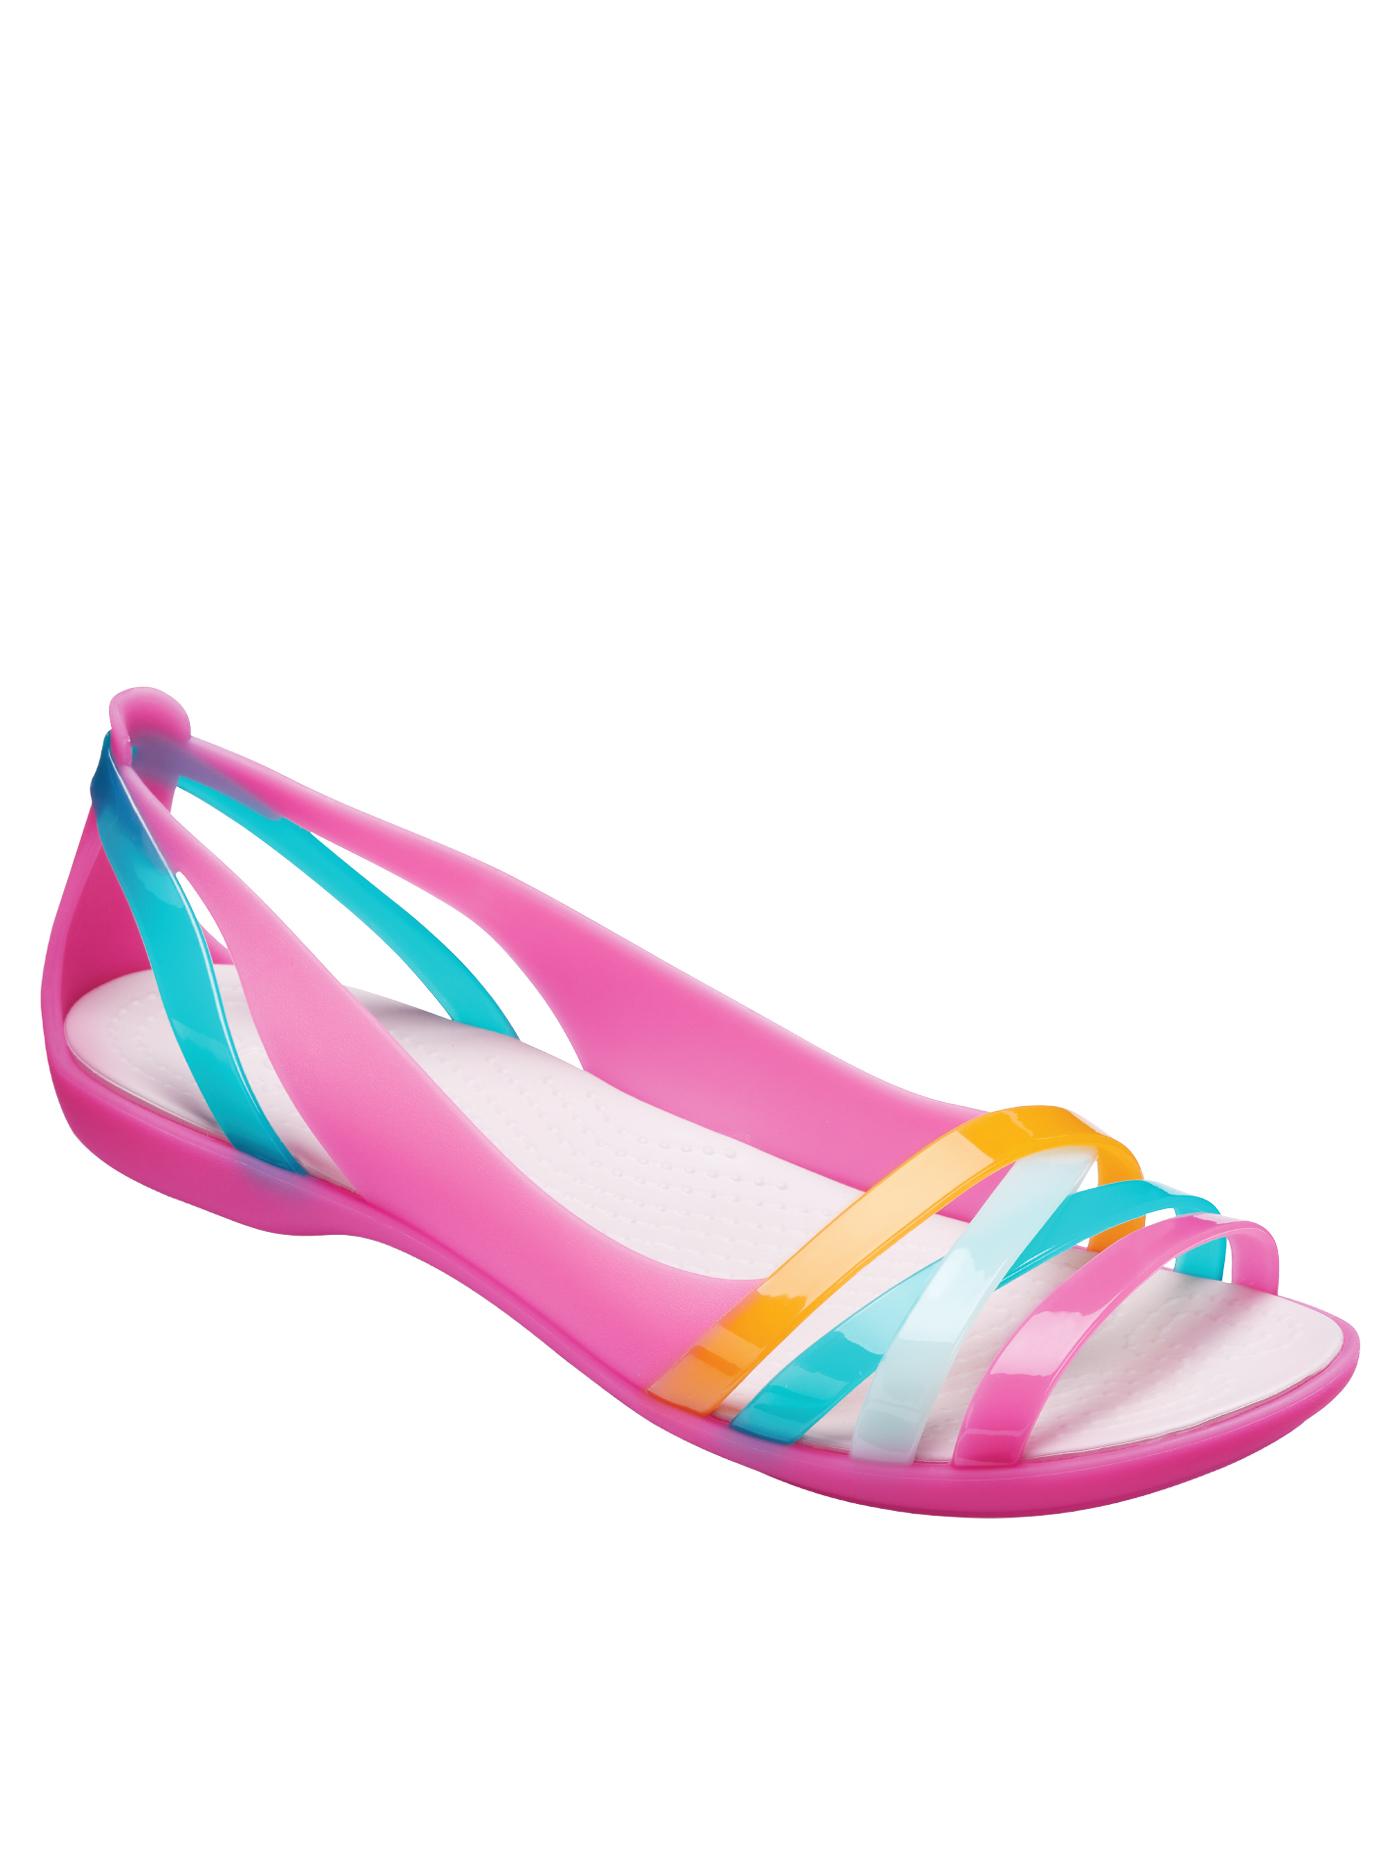 ส่งเร็ว | CROCS รองเท้าลำลองสำหรับผู้หญิง รุ่น Isabella Huarache 2 Flat ไซส์ W8  สี Paradise Pink - Rose Dust